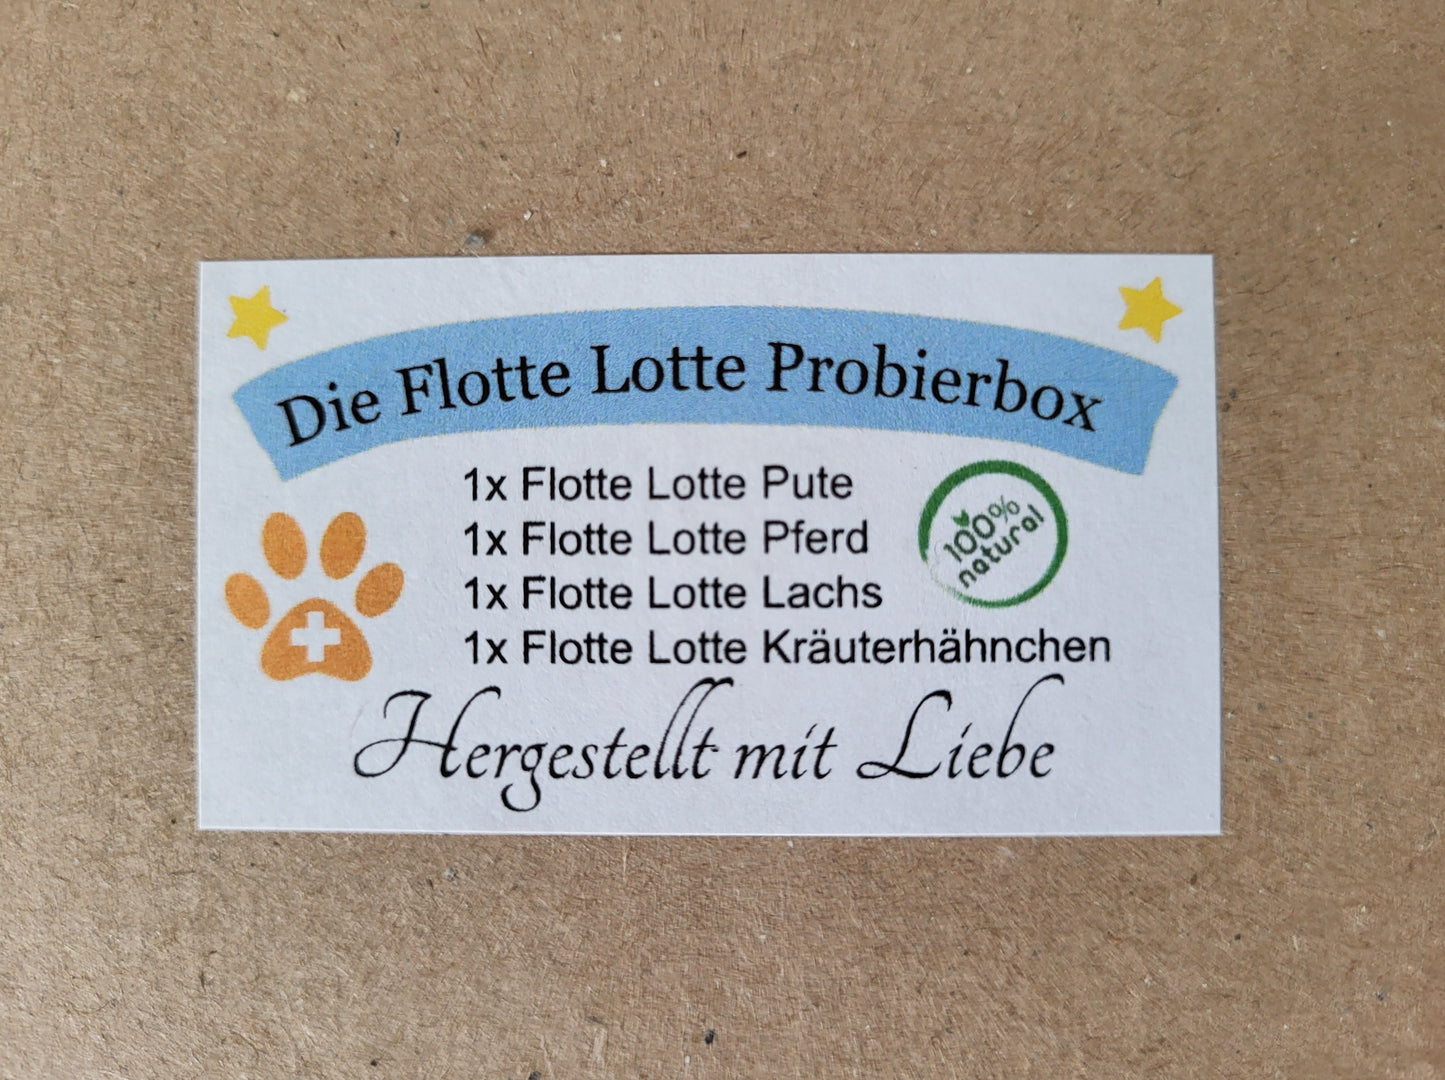 HAPPY PEPPY DELICIOUS - Flotte Lotte Probierbox